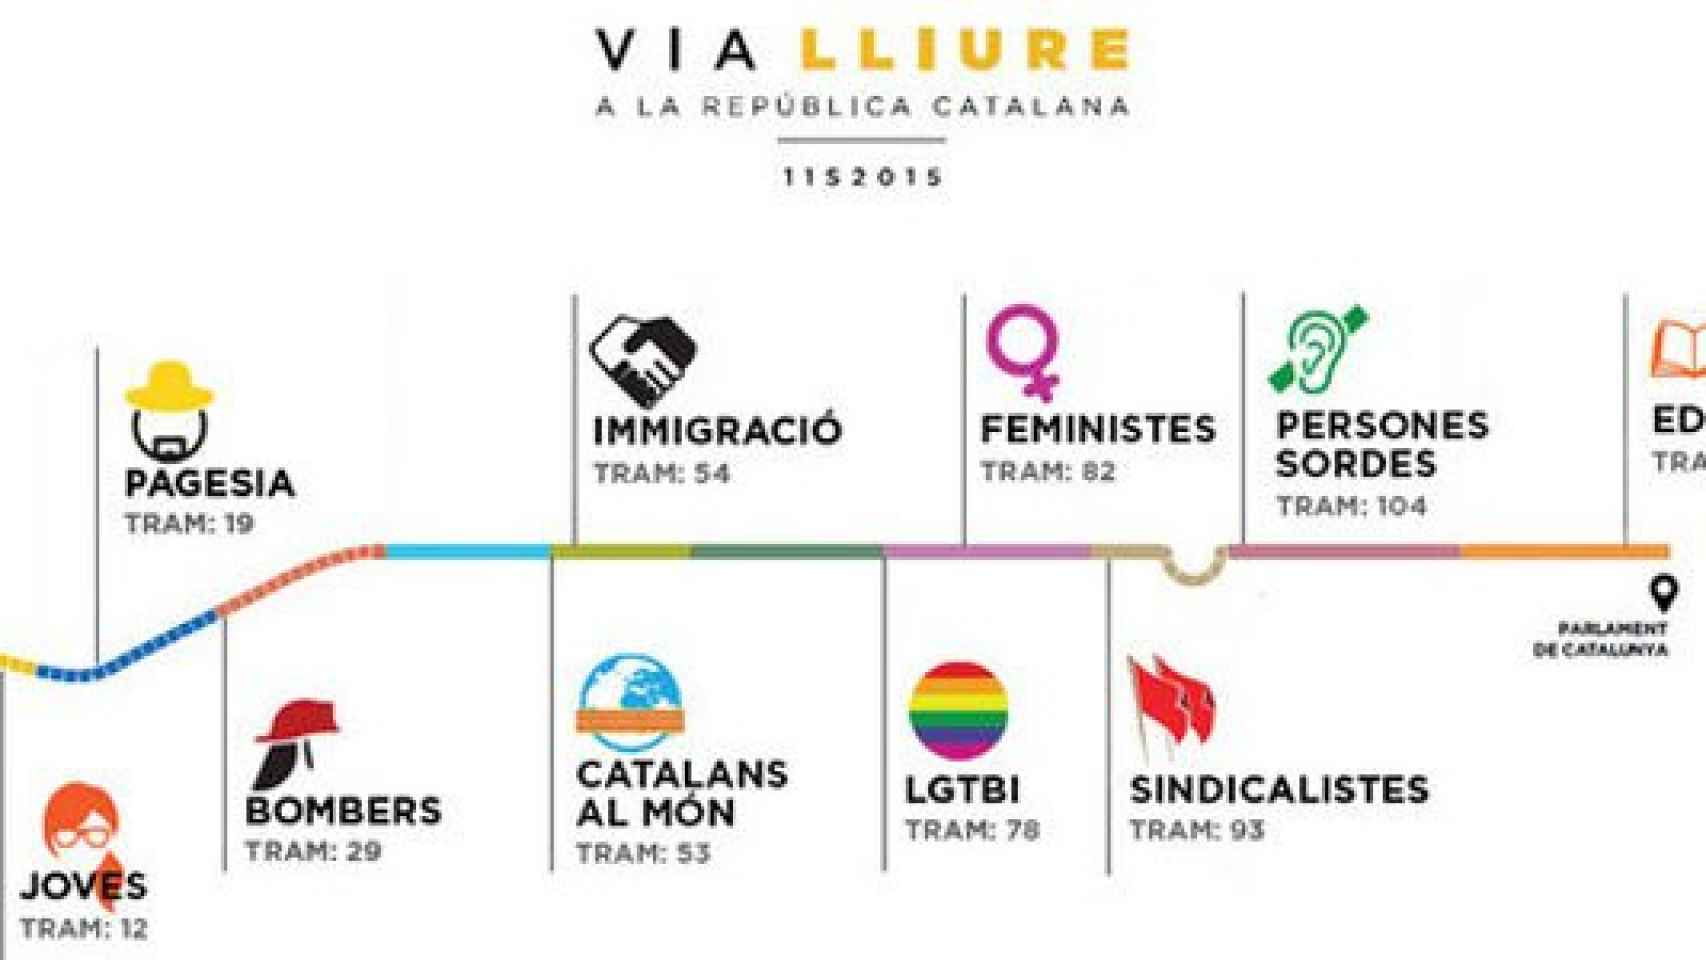 Distribución de los diferentes colectivos en los tramos de la Meridiana para la Via Lliure a la República Catalana